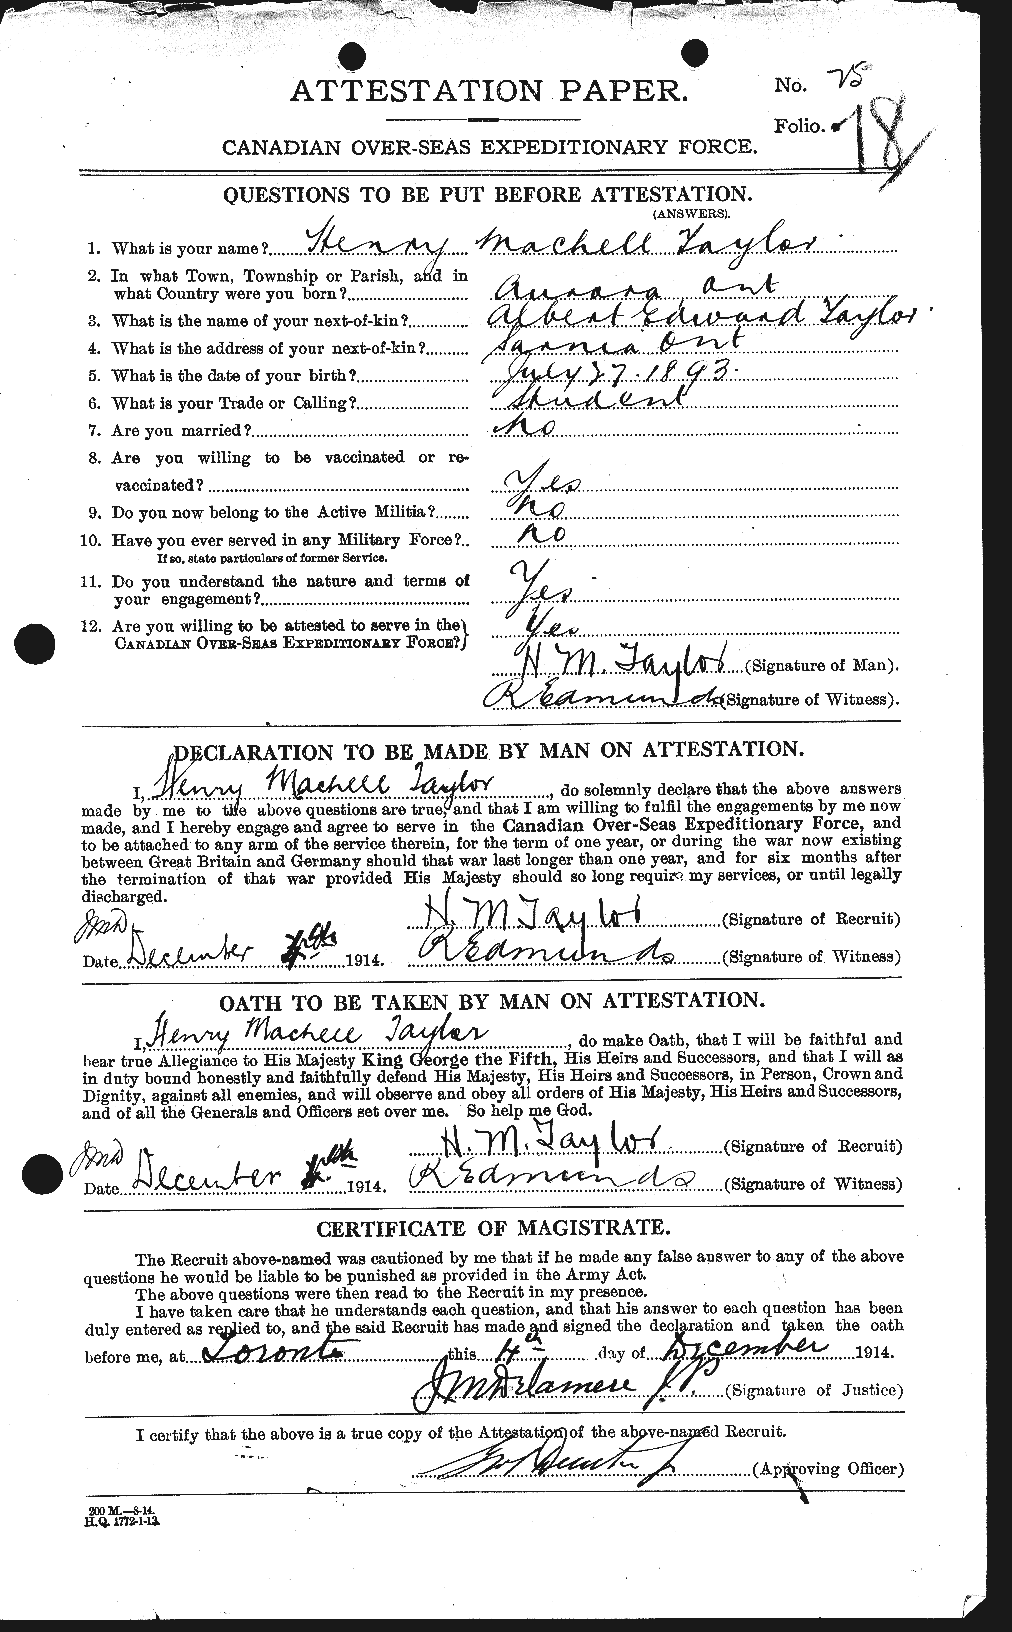 Dossiers du Personnel de la Première Guerre mondiale - CEC 626548a